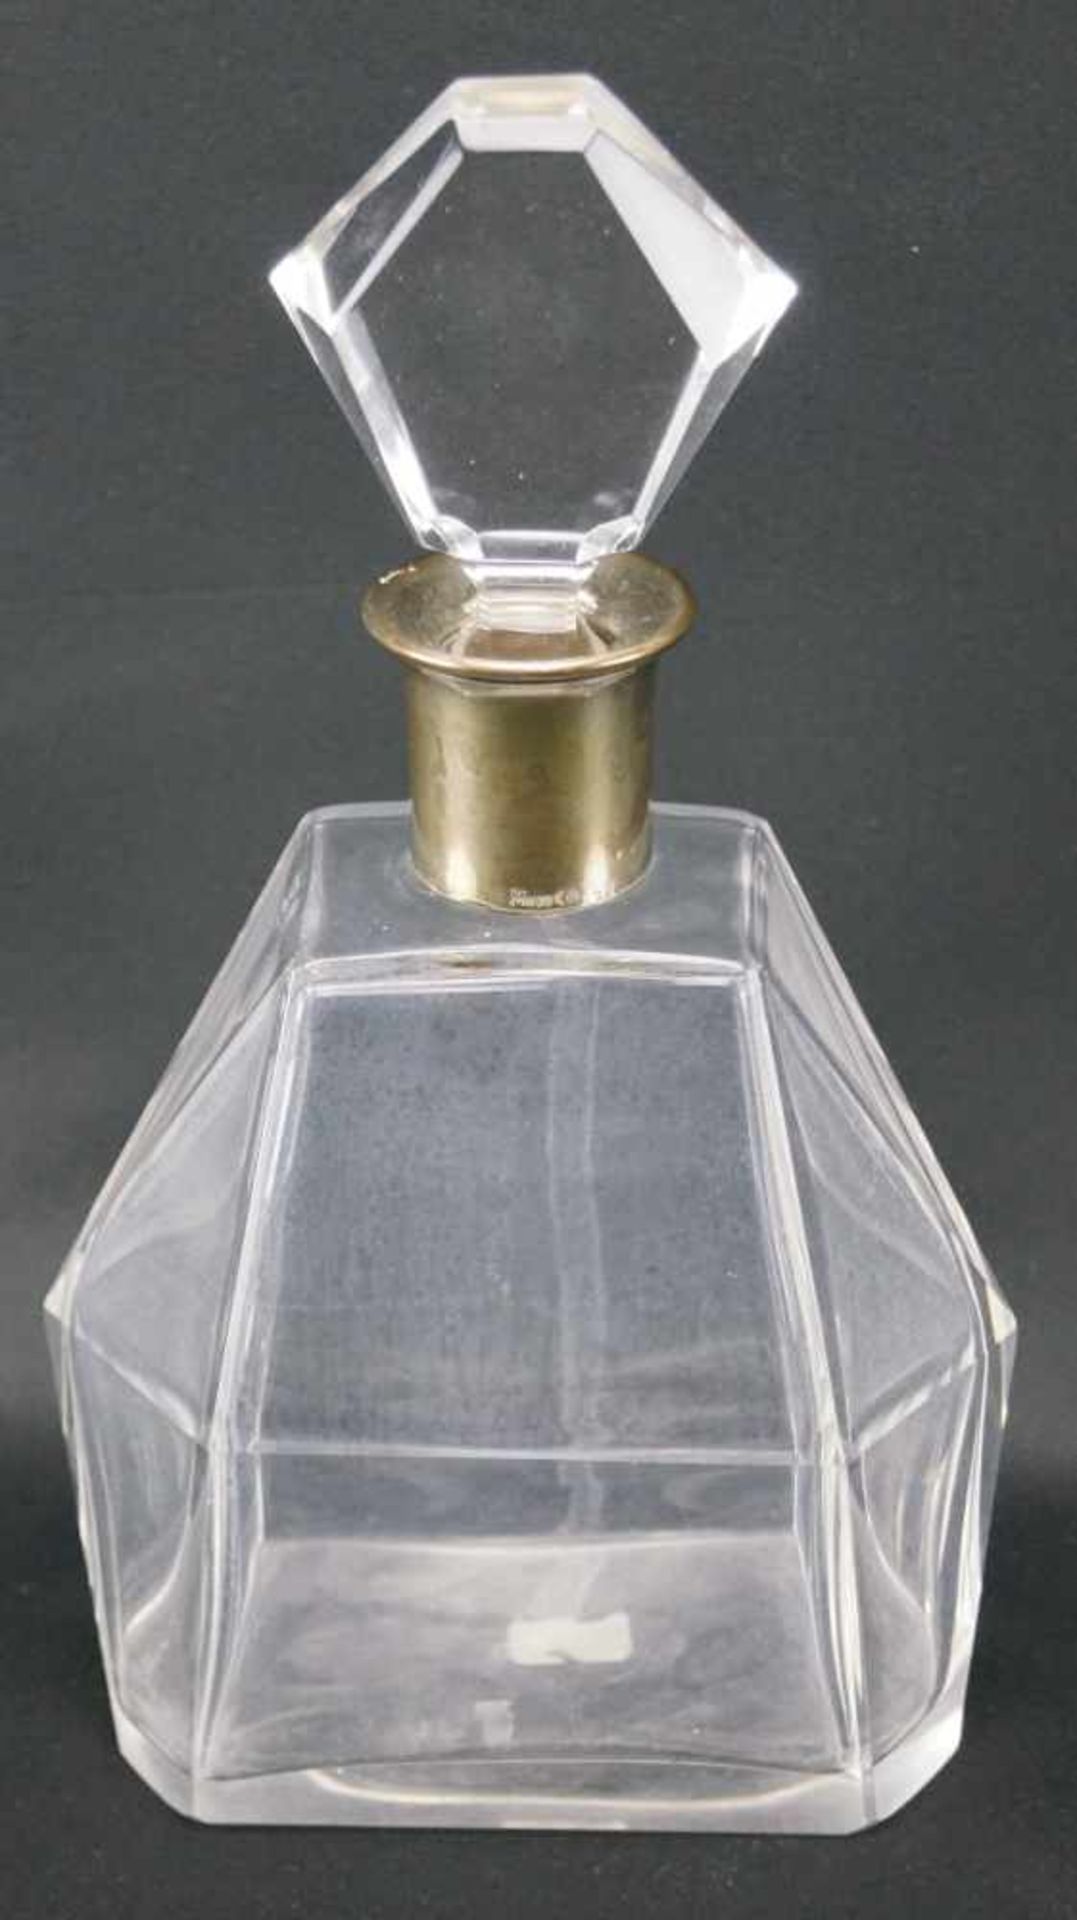 Kristallkaraffe mit SilbermonturSilber, nicht gepunzt, Höhe 24,5 cm x Länge 14 cm x Breite 9 cm,